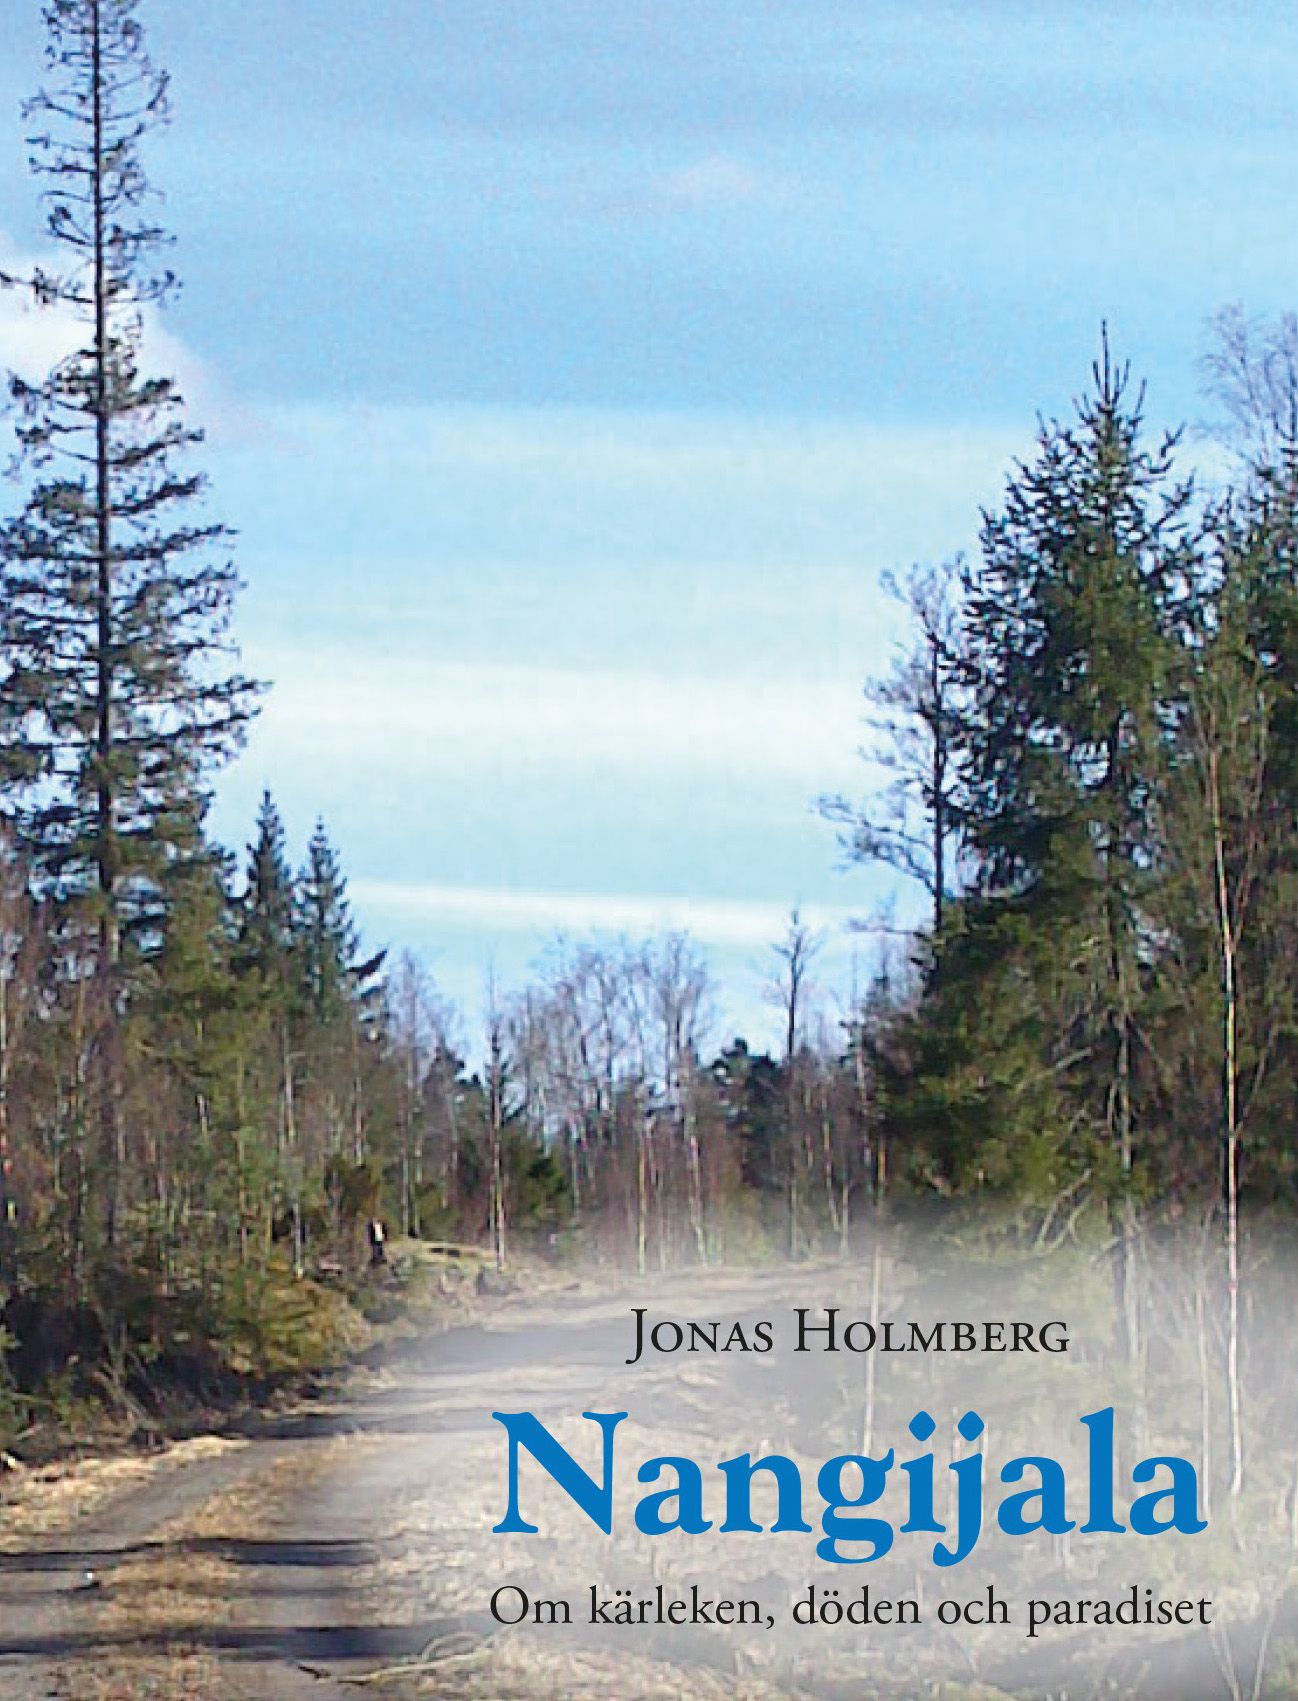 Nangijala - Om kärleken, döden och paradiset, e-bok av Jonas Holmberg